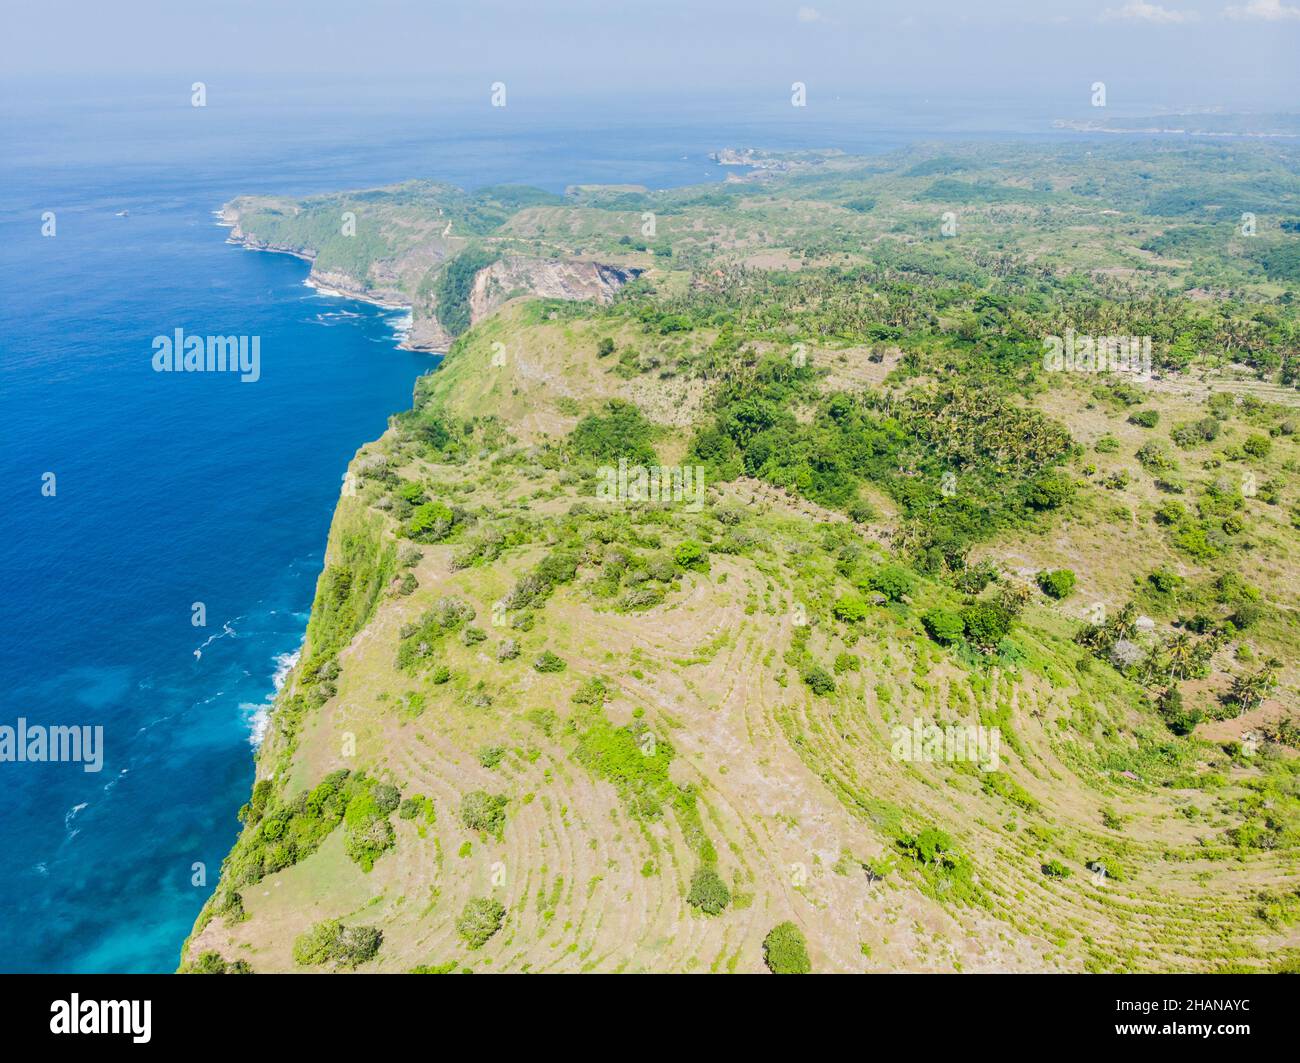 Coast of the island of Nusa Peida. Nature Indonesia. Stock Photo